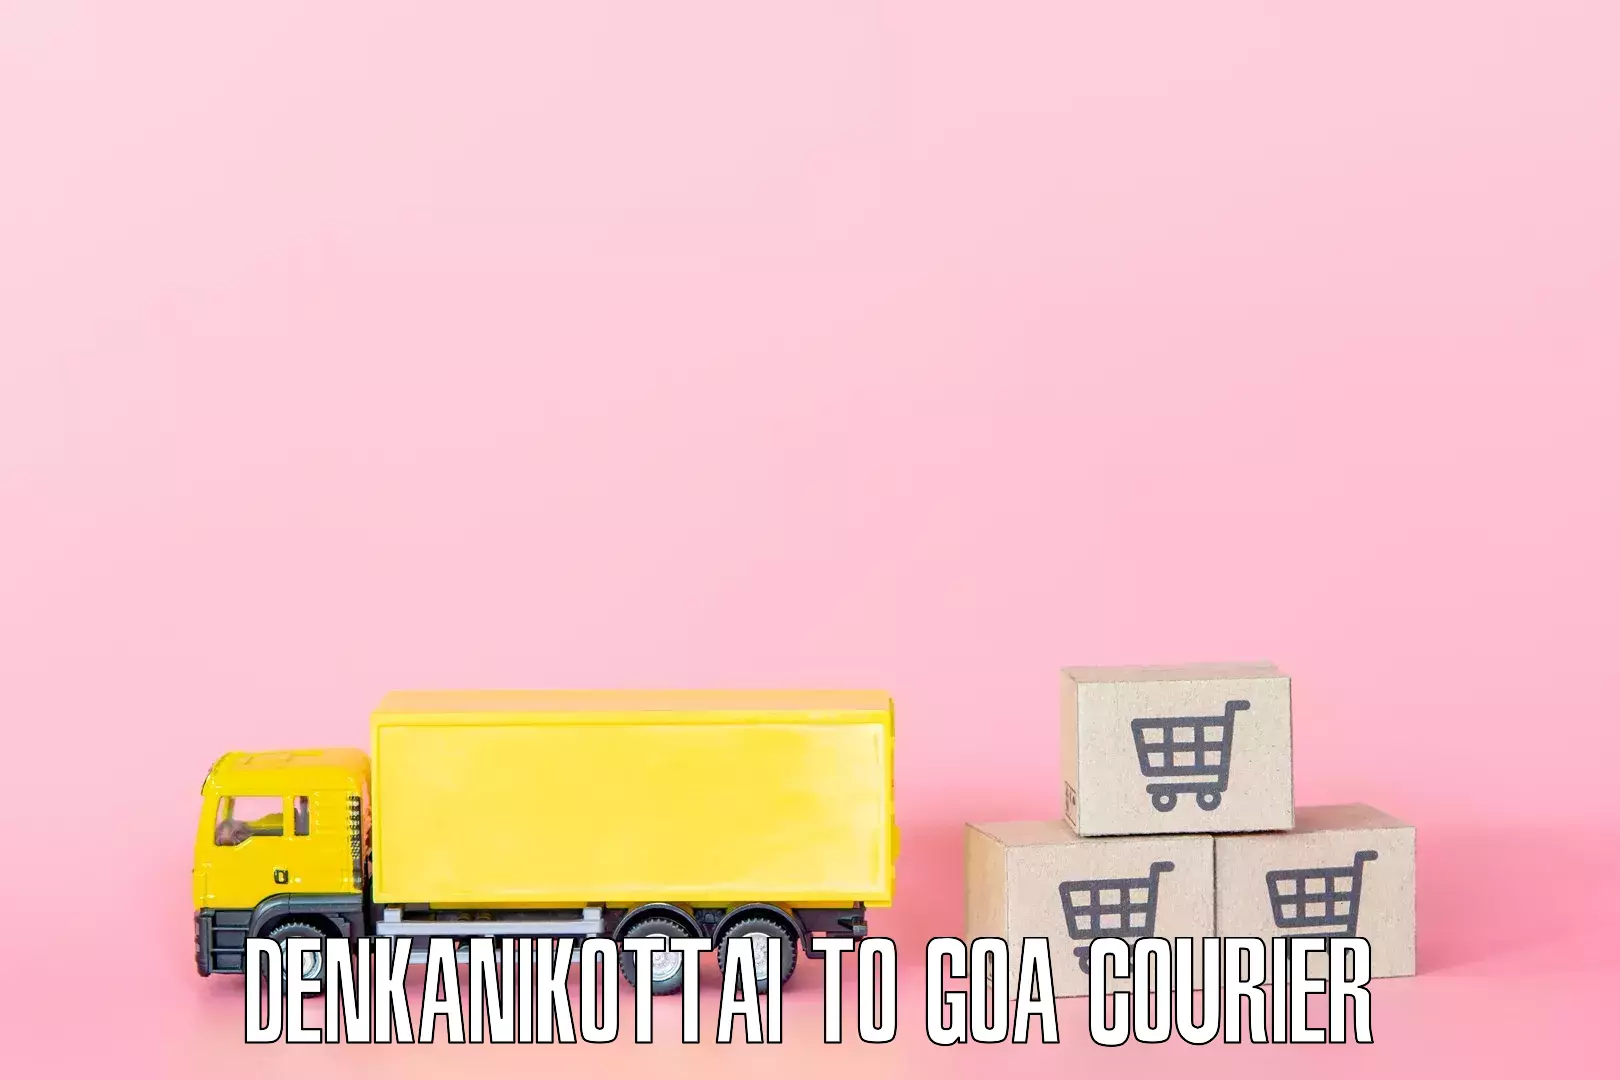 Reliable furniture shifting Denkanikottai to Goa University